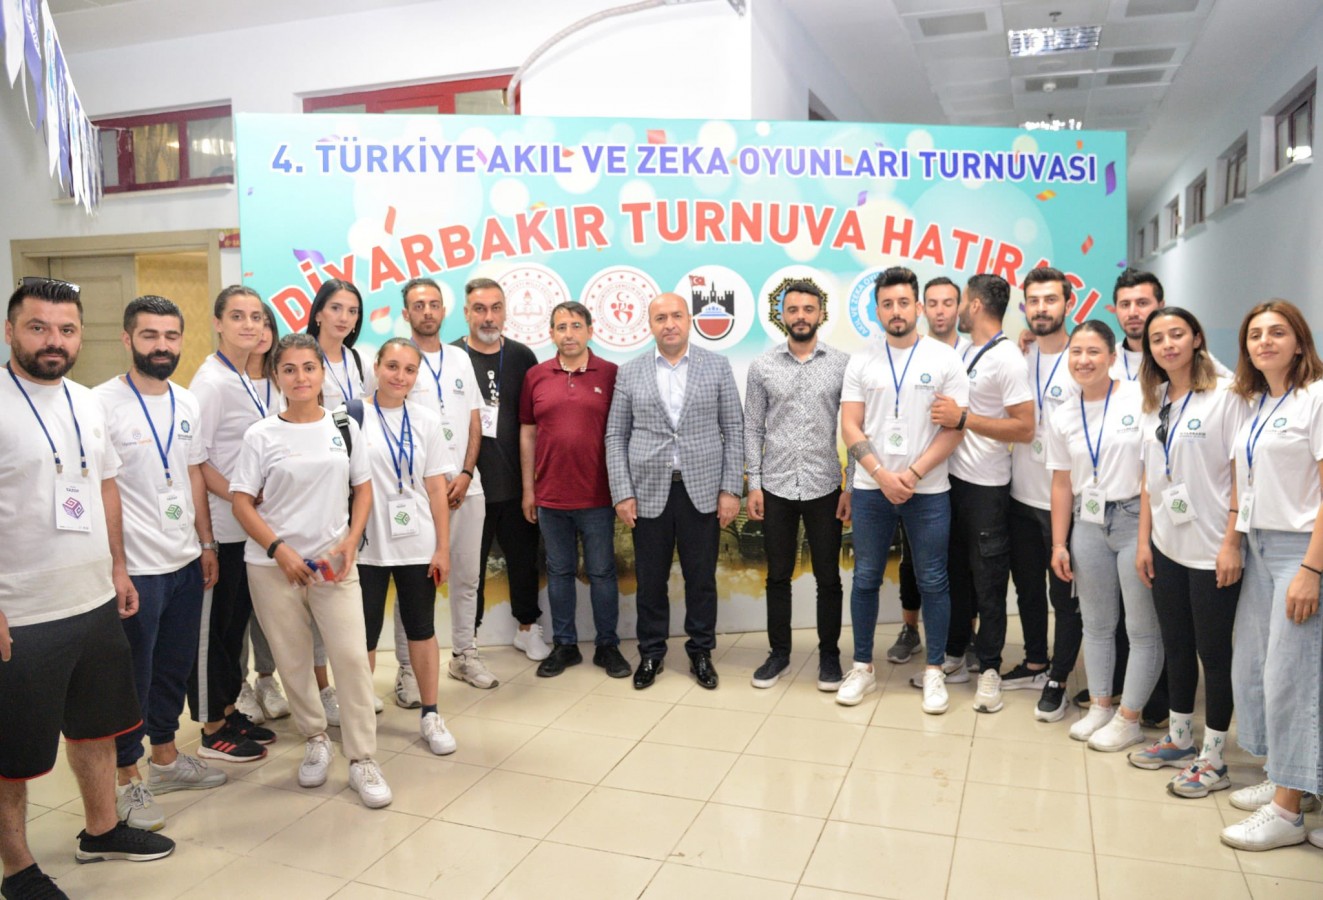 Akıl ve Zeka Oyunları finali Diyarbakır'da